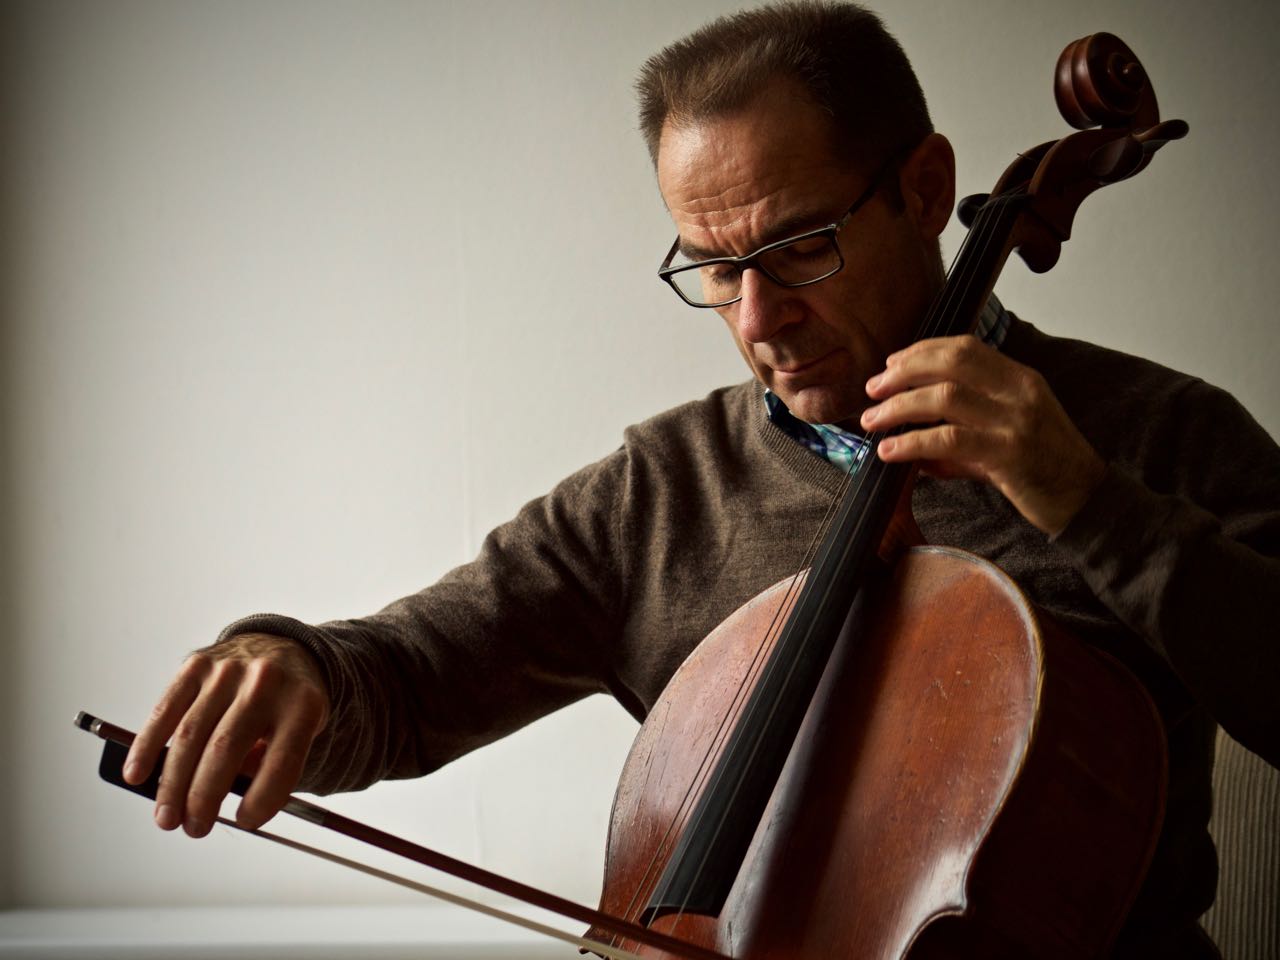 Christian Kewitsch spielt Cello